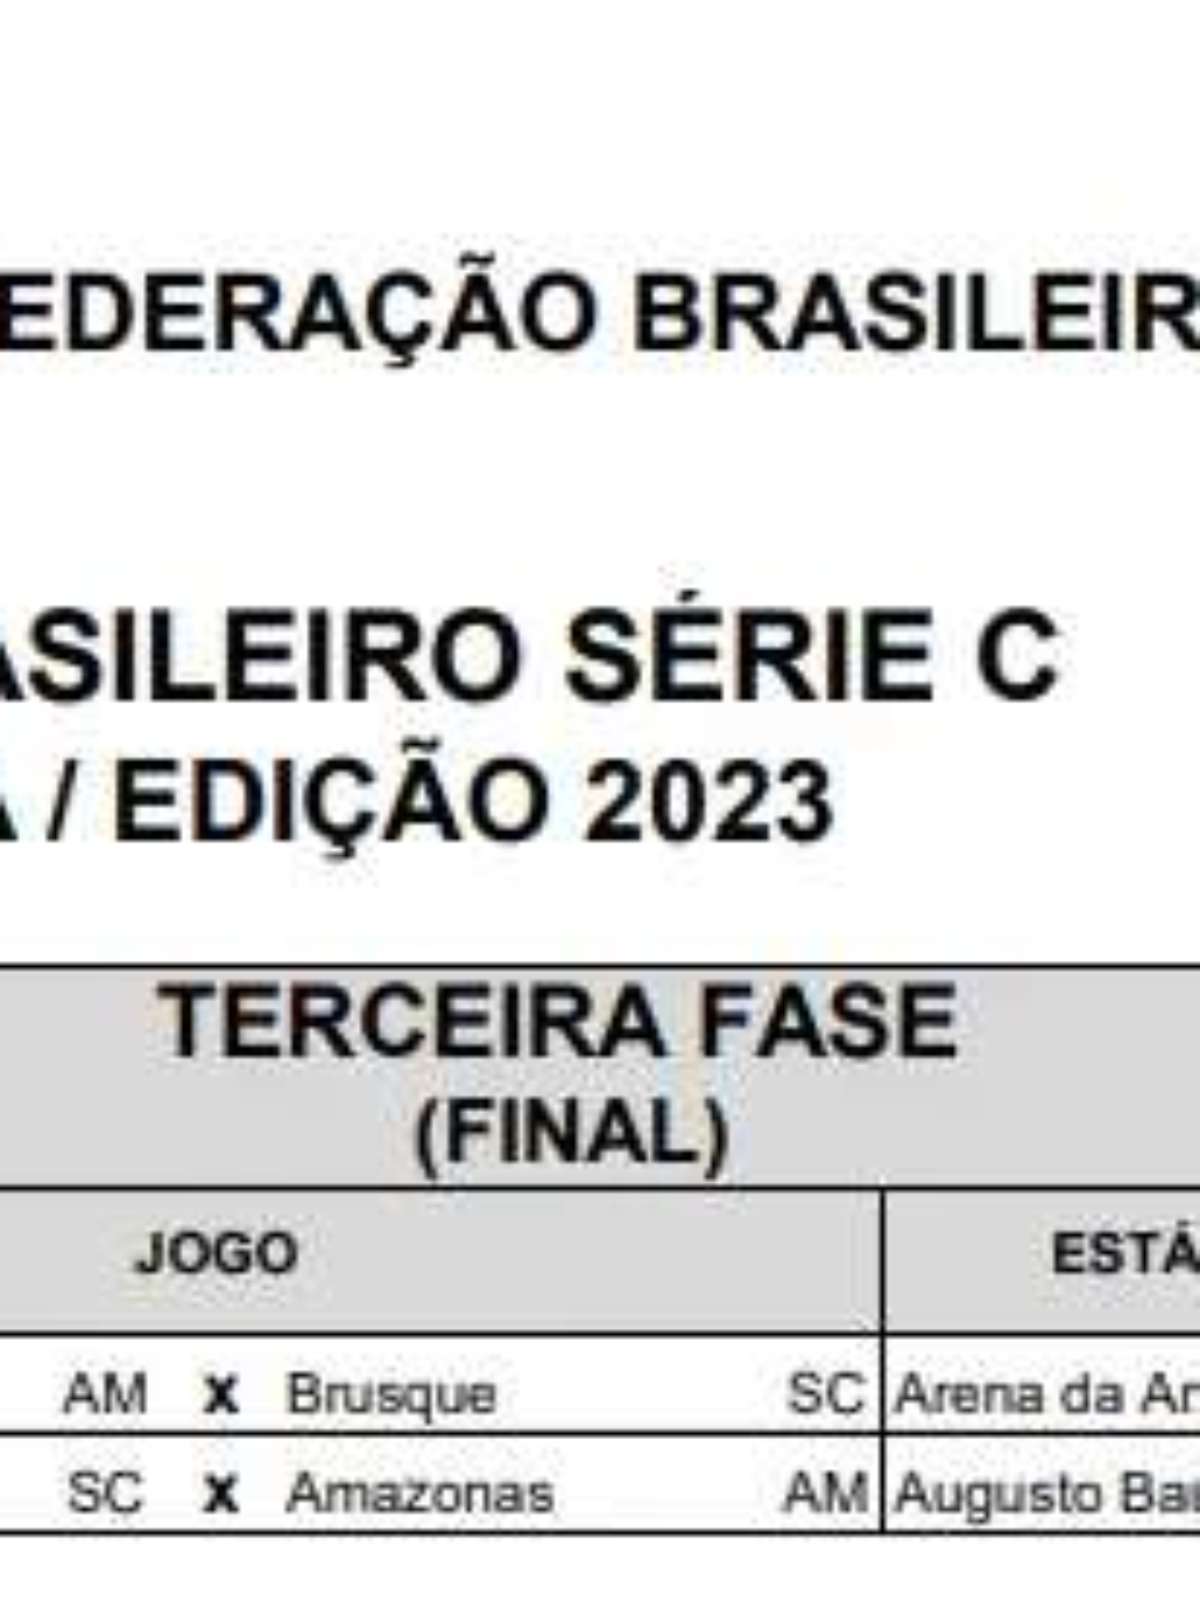 Final Série C 2023: Primeiro jogo domingo